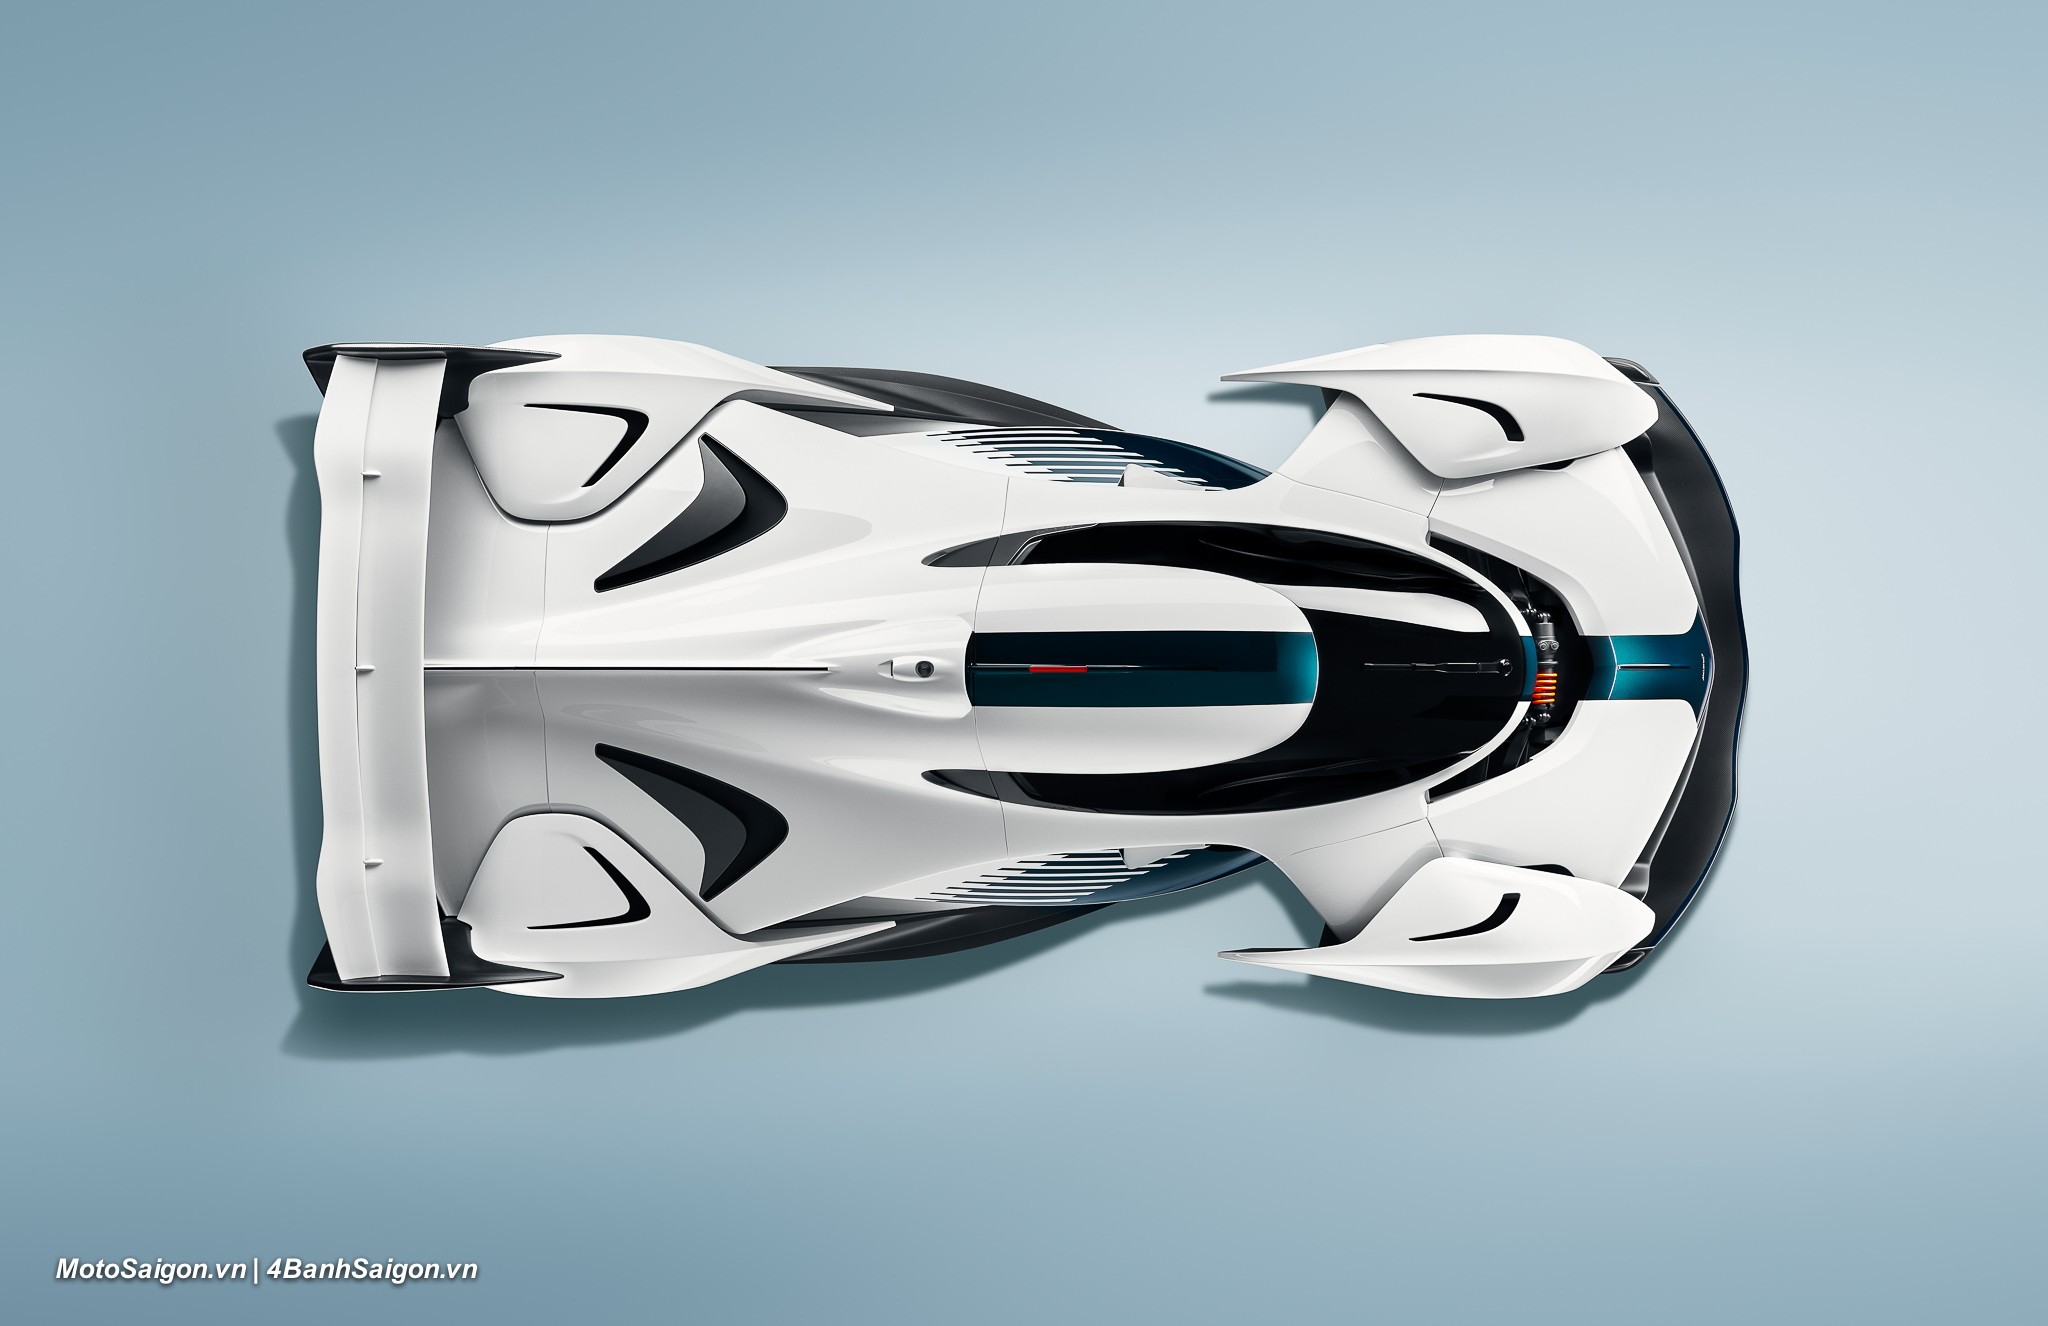 McLaren Solus GT cỗ máy tốc độ đỉnh cao dành cho đường đua từ thế giới ảo đến đời thực